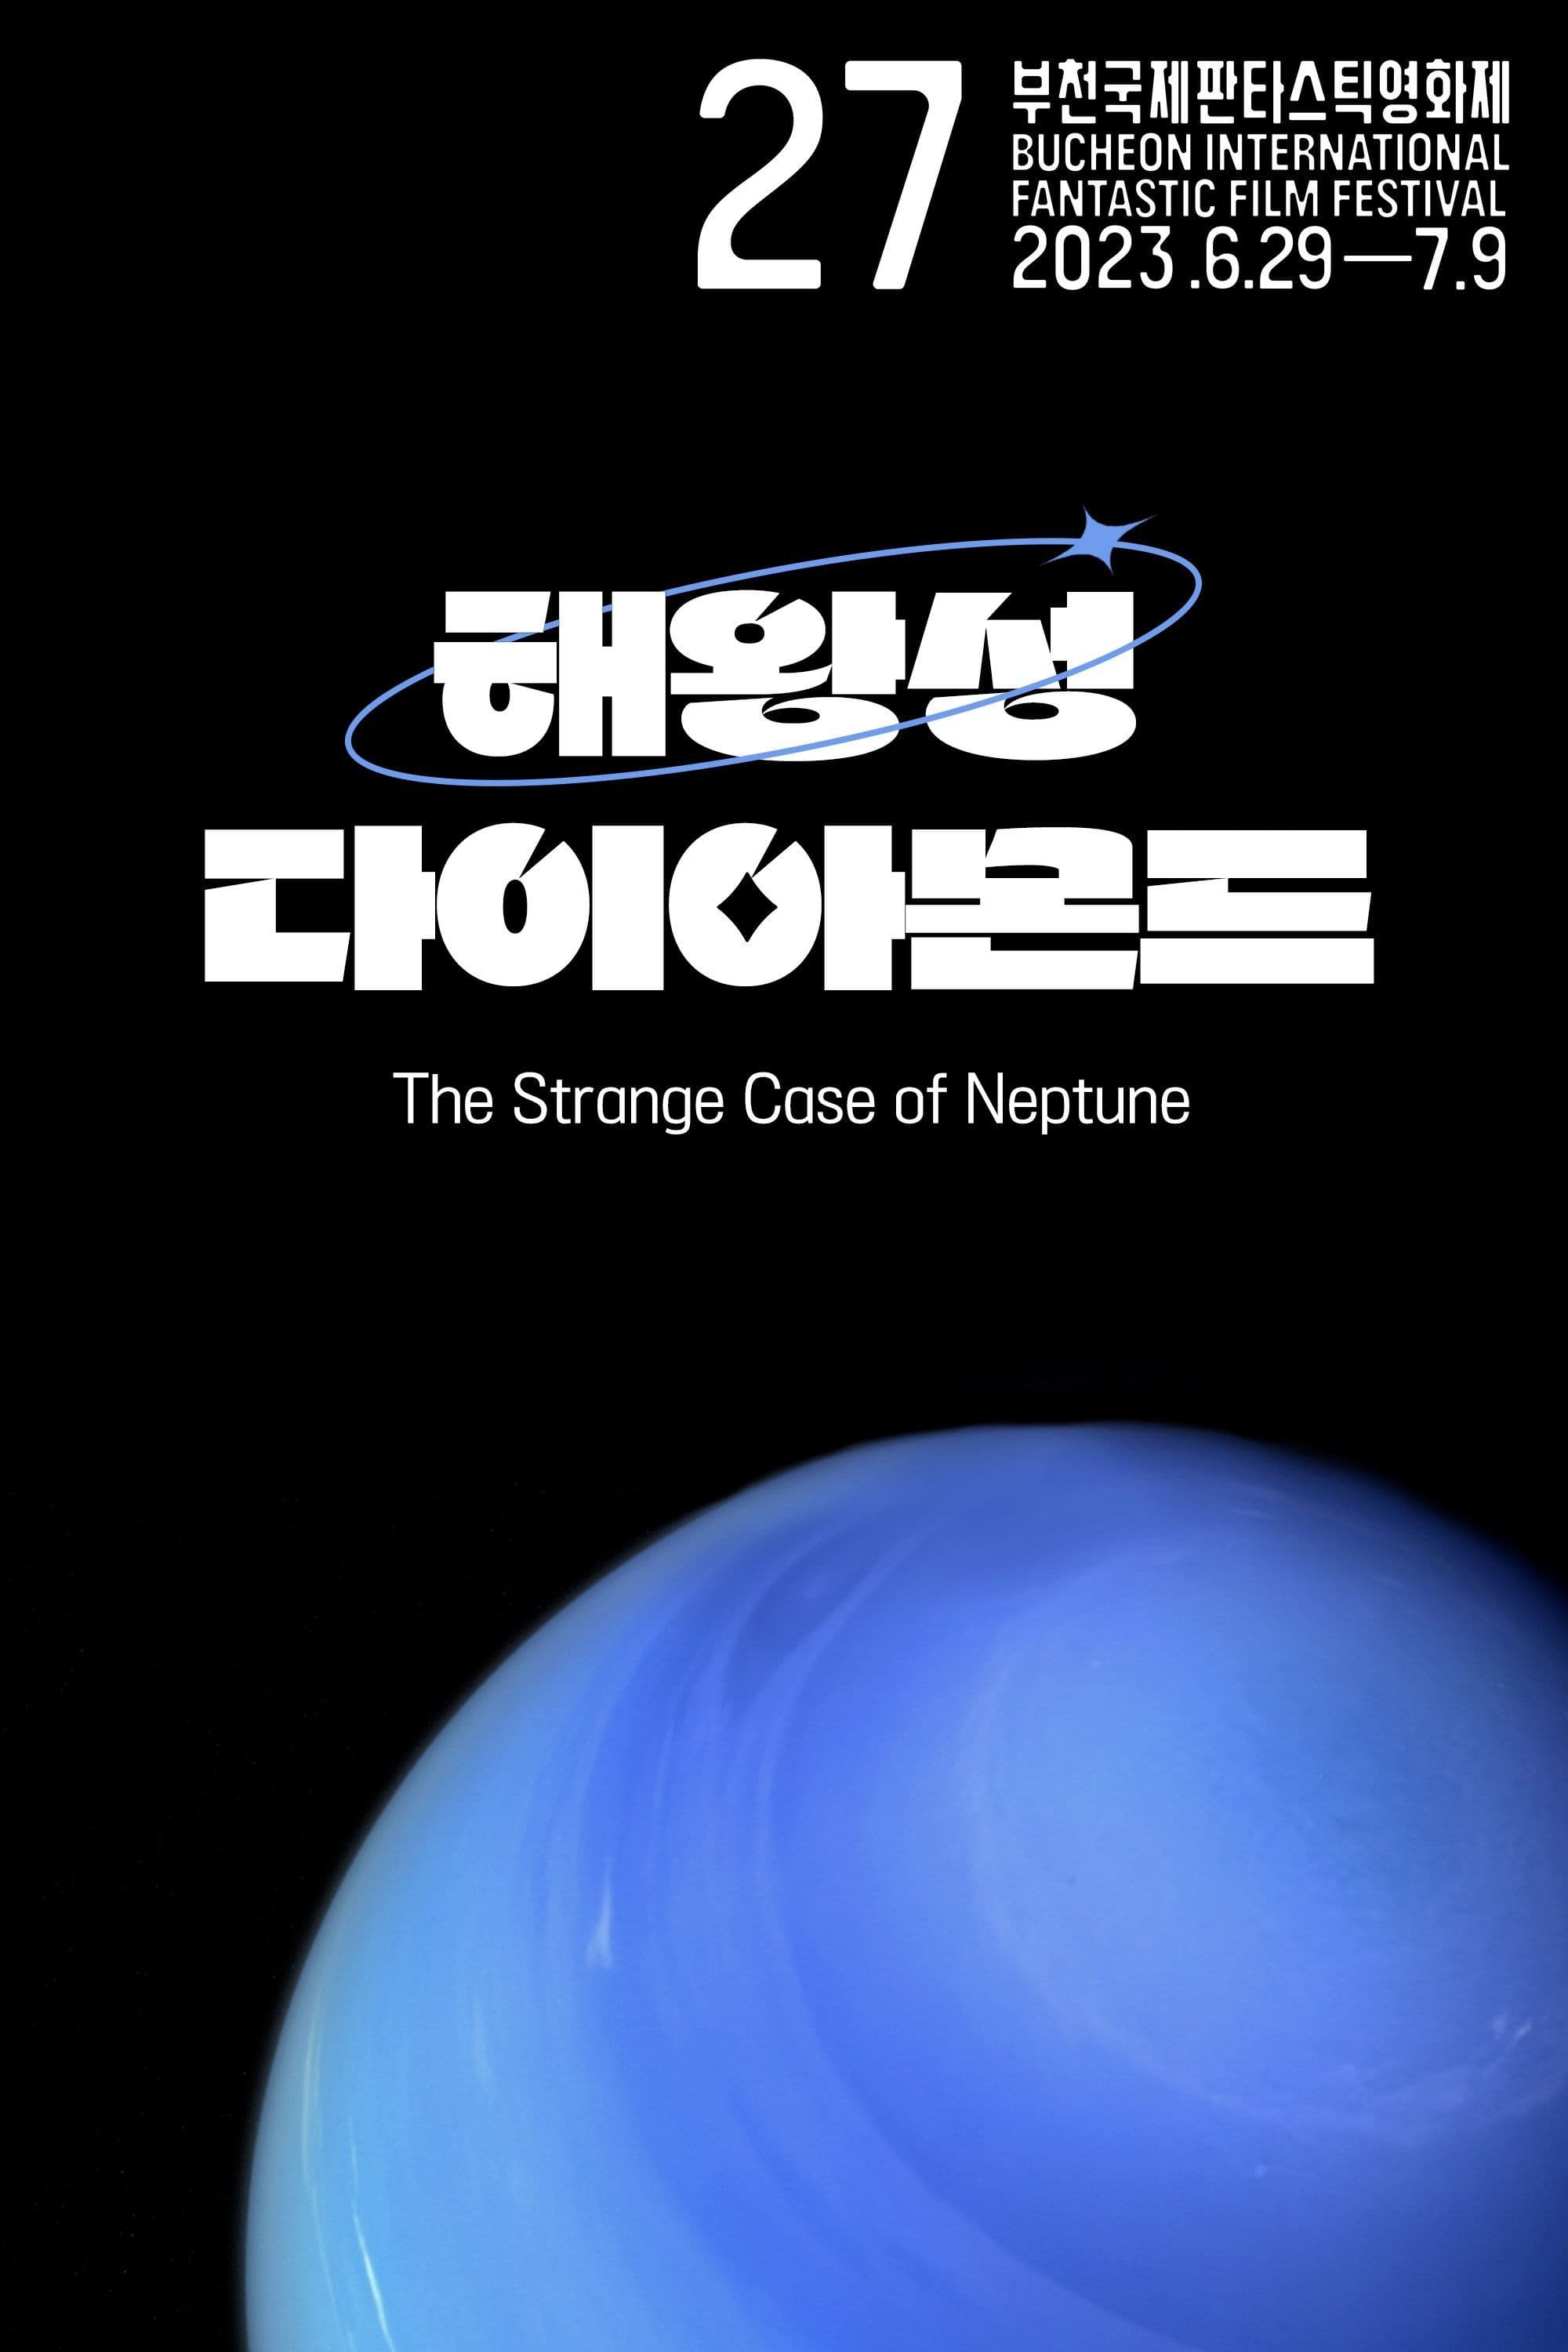 The Strange Case of Neptune